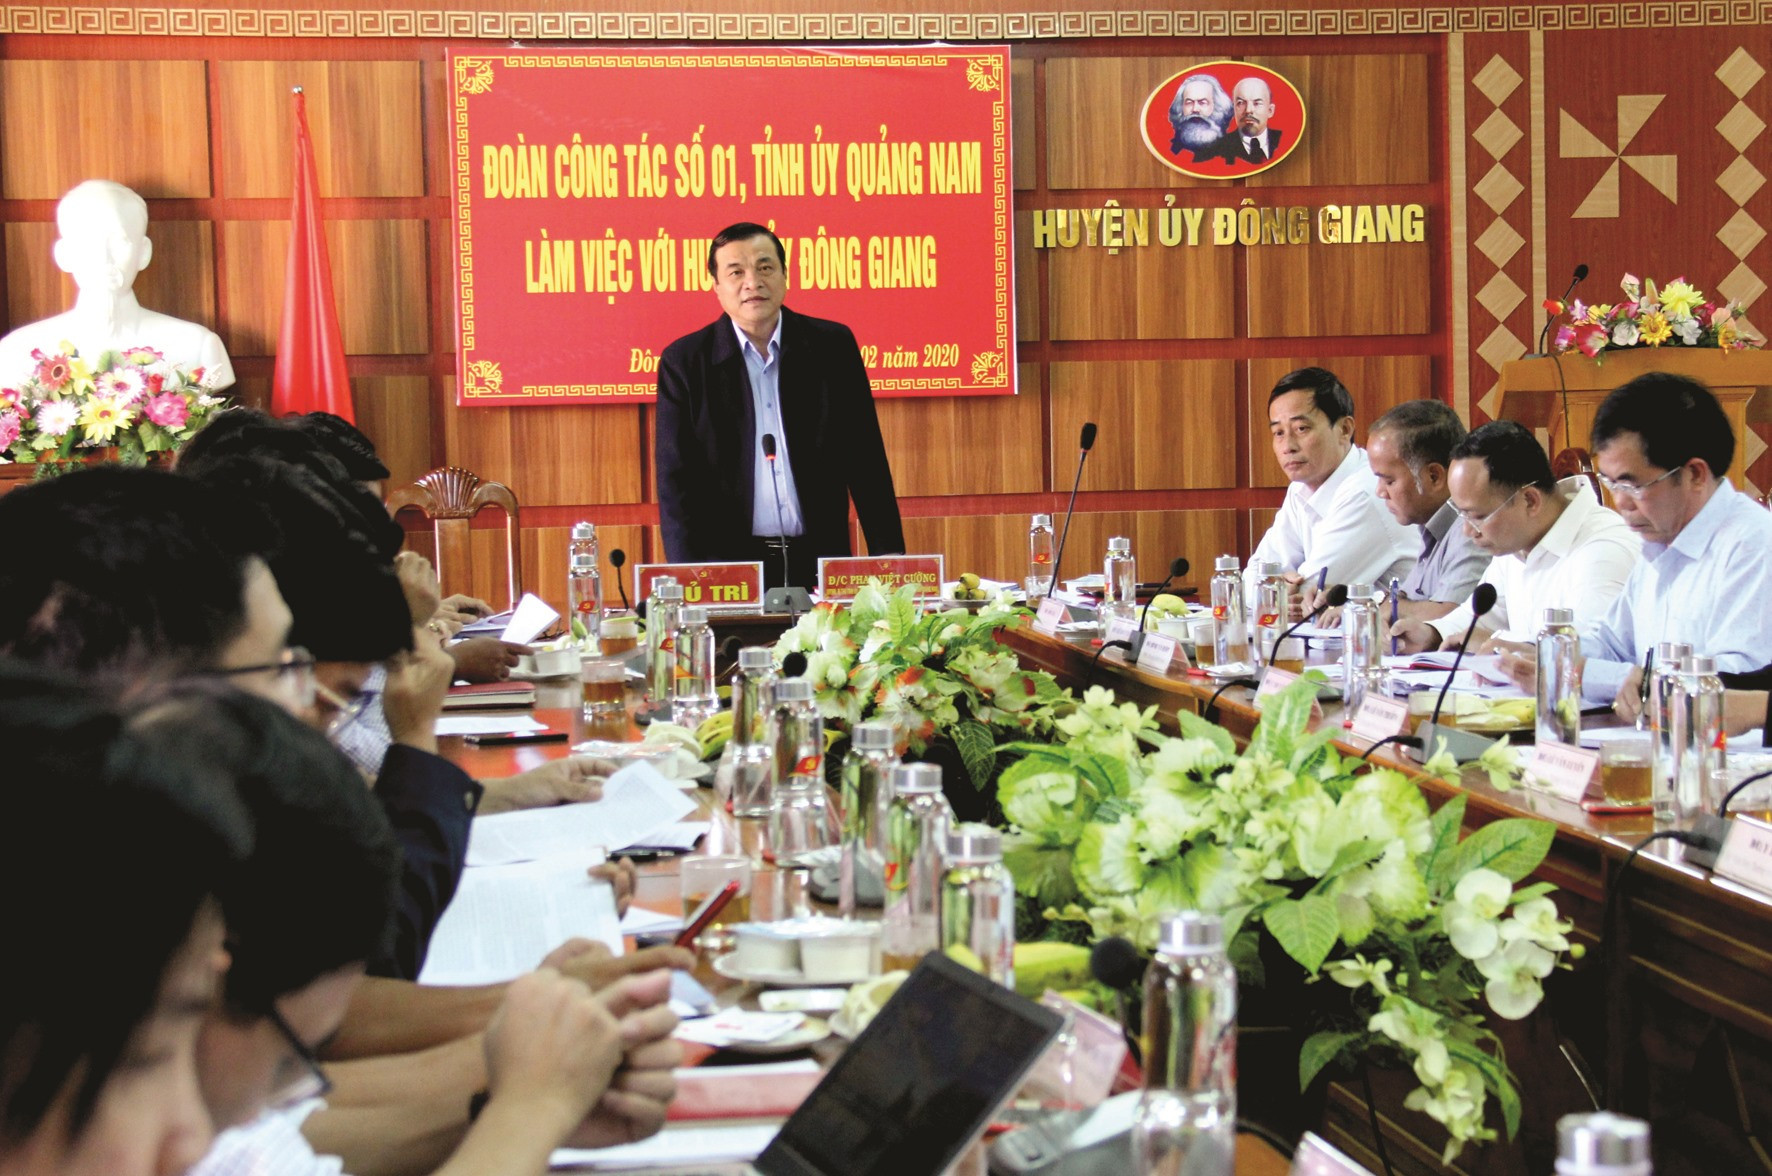 Đoàn công tác của Tỉnh ủy làm việc với Huyện ủy Đông Giang liên quan đến công tác chuẩn bị Đại hội Đảng các cấp, nhiệm kỳ 2020 - 2025. Ảnh: ALĂNG NGƯỚC